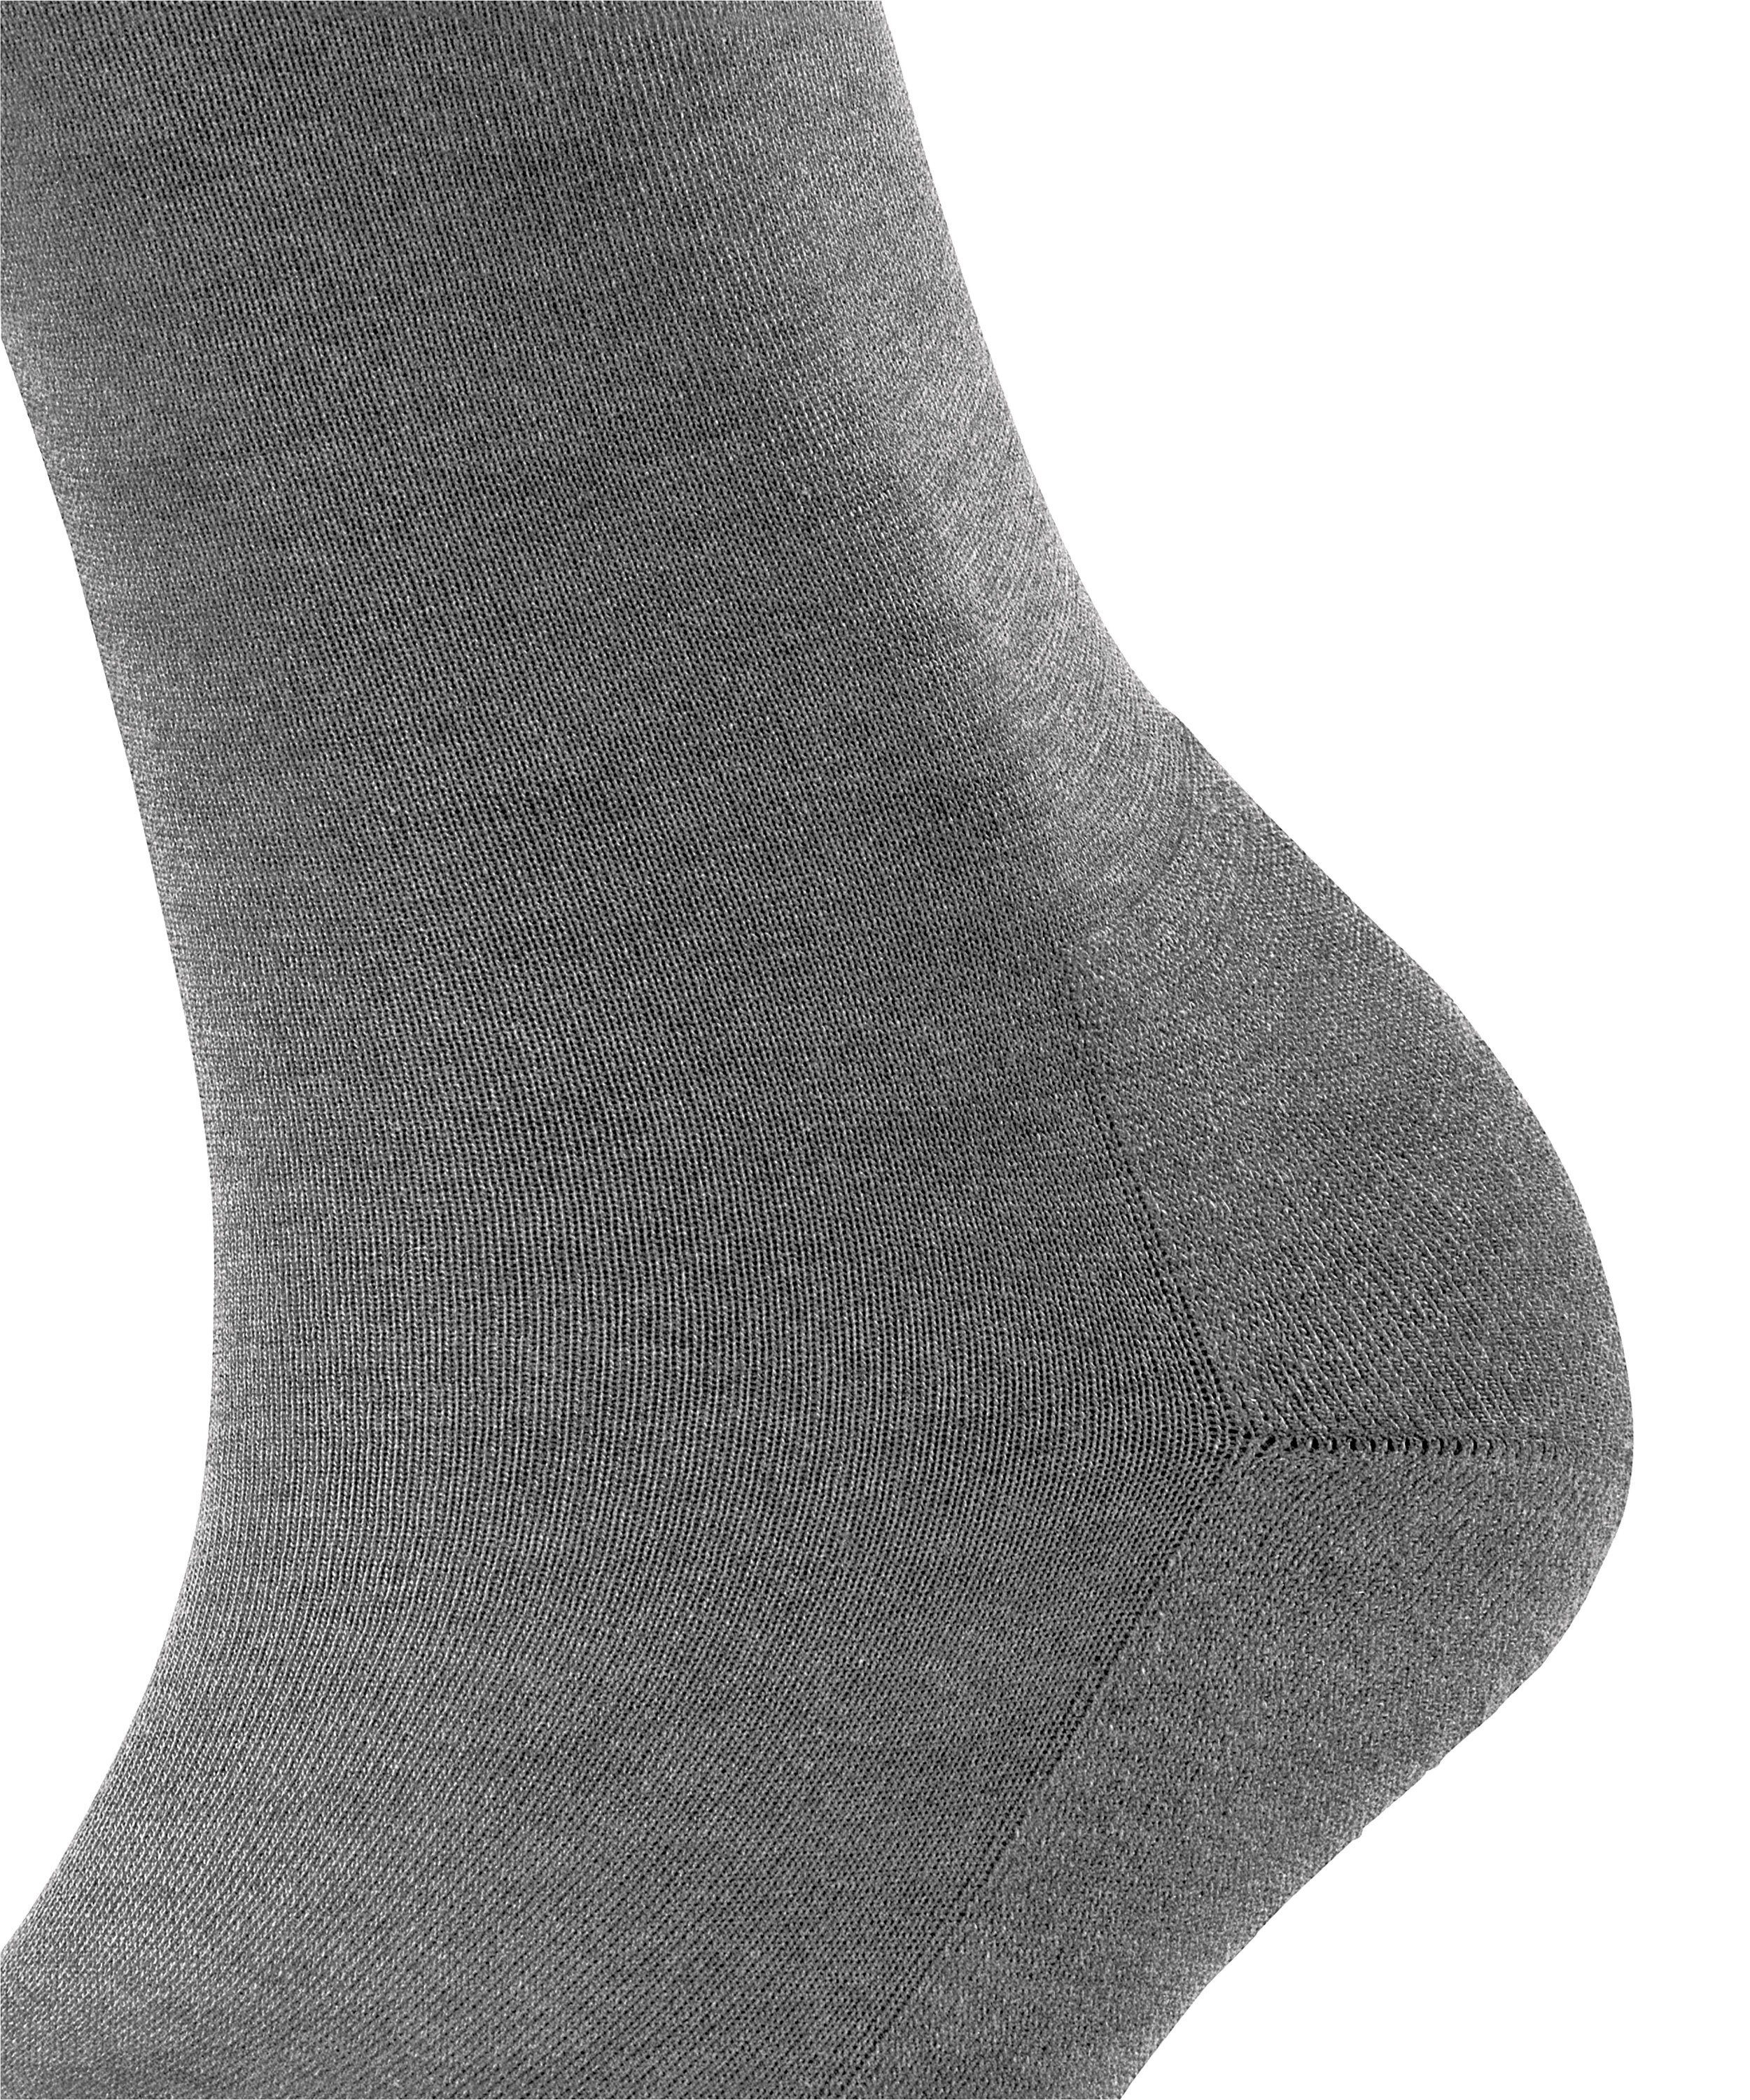 (1-Paar) light greymel. Socken (3216) FALKE ClimaWool